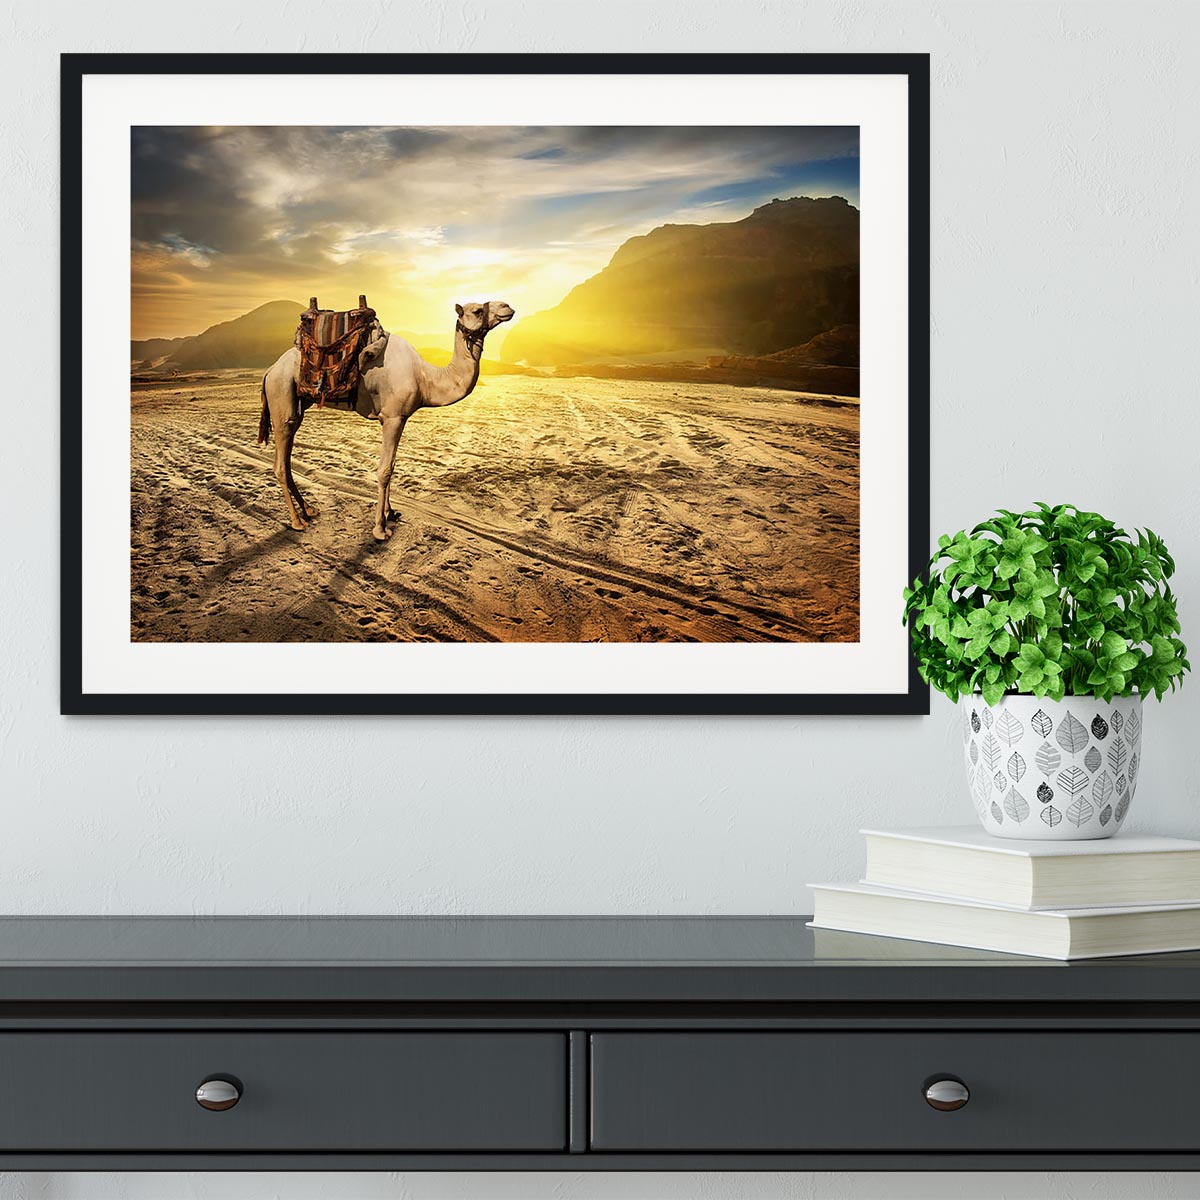 Camel in sandy desert near mountains at sunset Framed Print - Canvas Art Rocks - 1